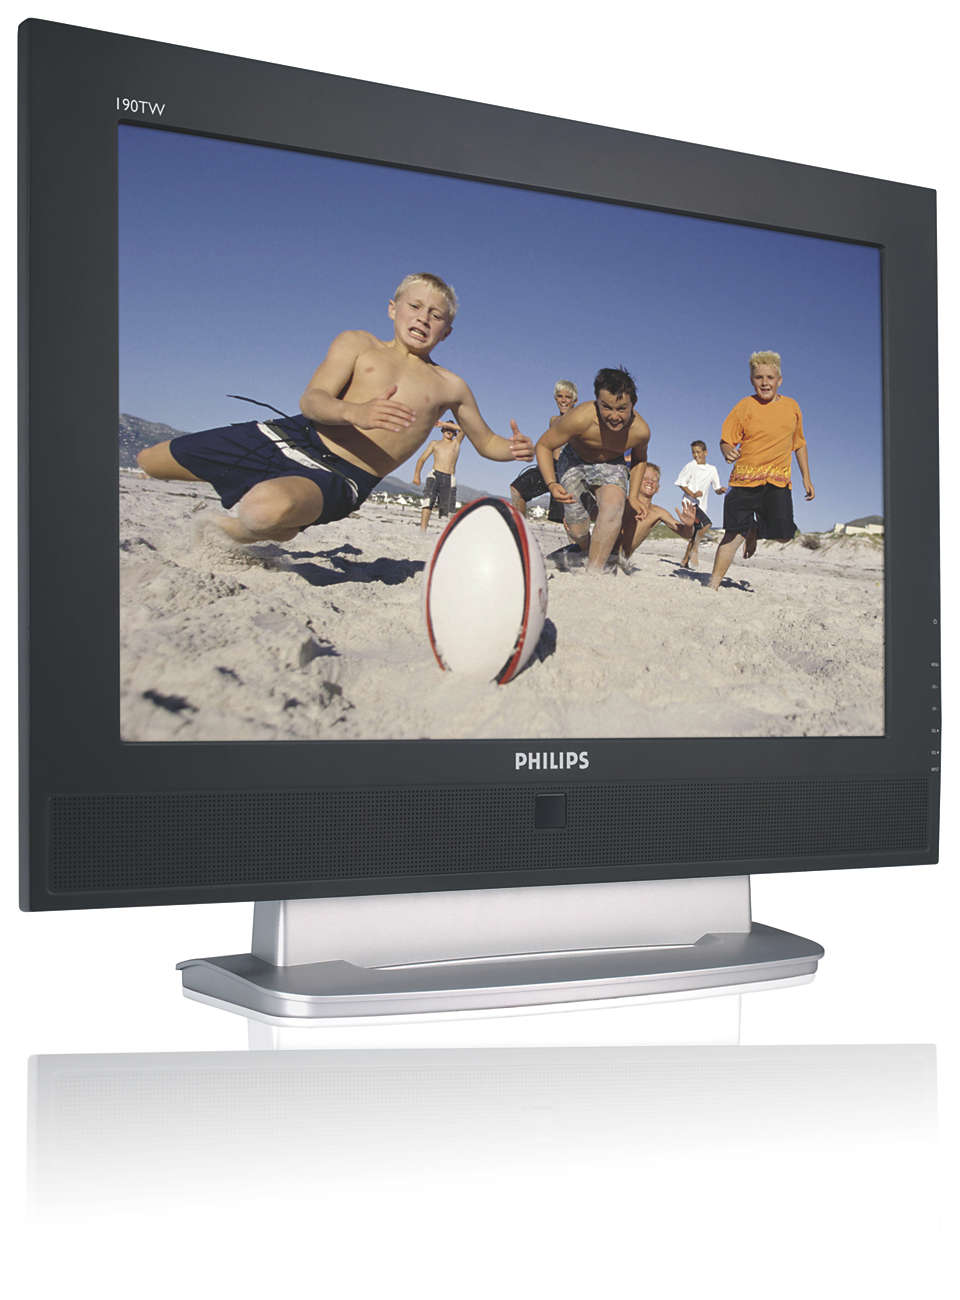 Plne vybavený LCD monitor kombinovaný s TV